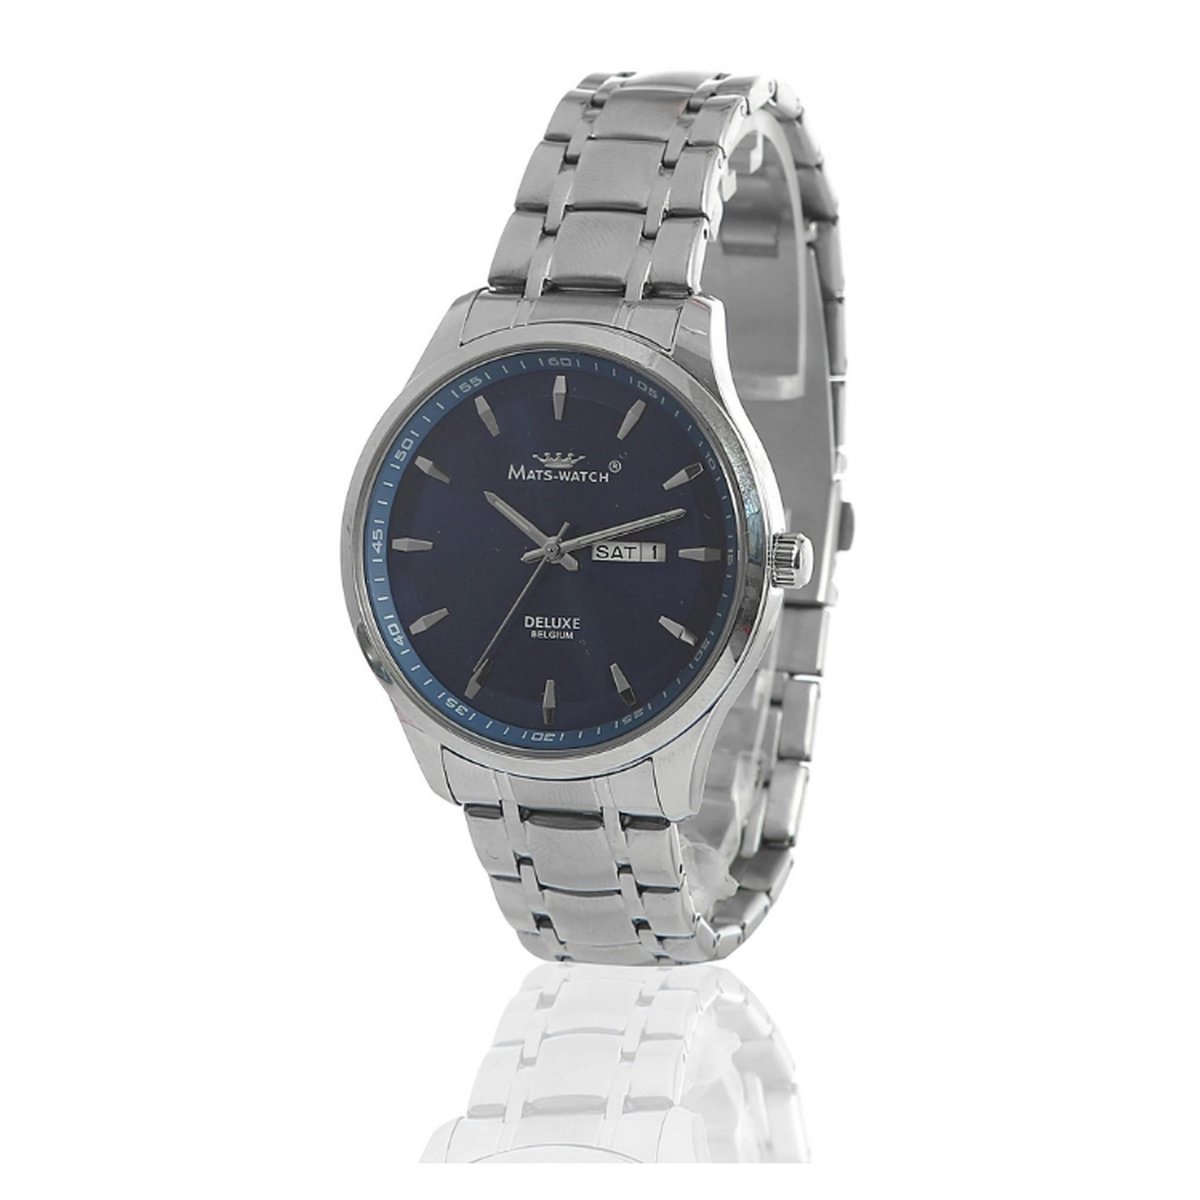 Mats Watch Collectie voor Heren - MIDNIGHT BLUES - Horloge voor hem - zilver- Belgische Merk - 25 jaar garantie - Sieraden - Deluxe - Belgische kwaliteit - Limited Edition